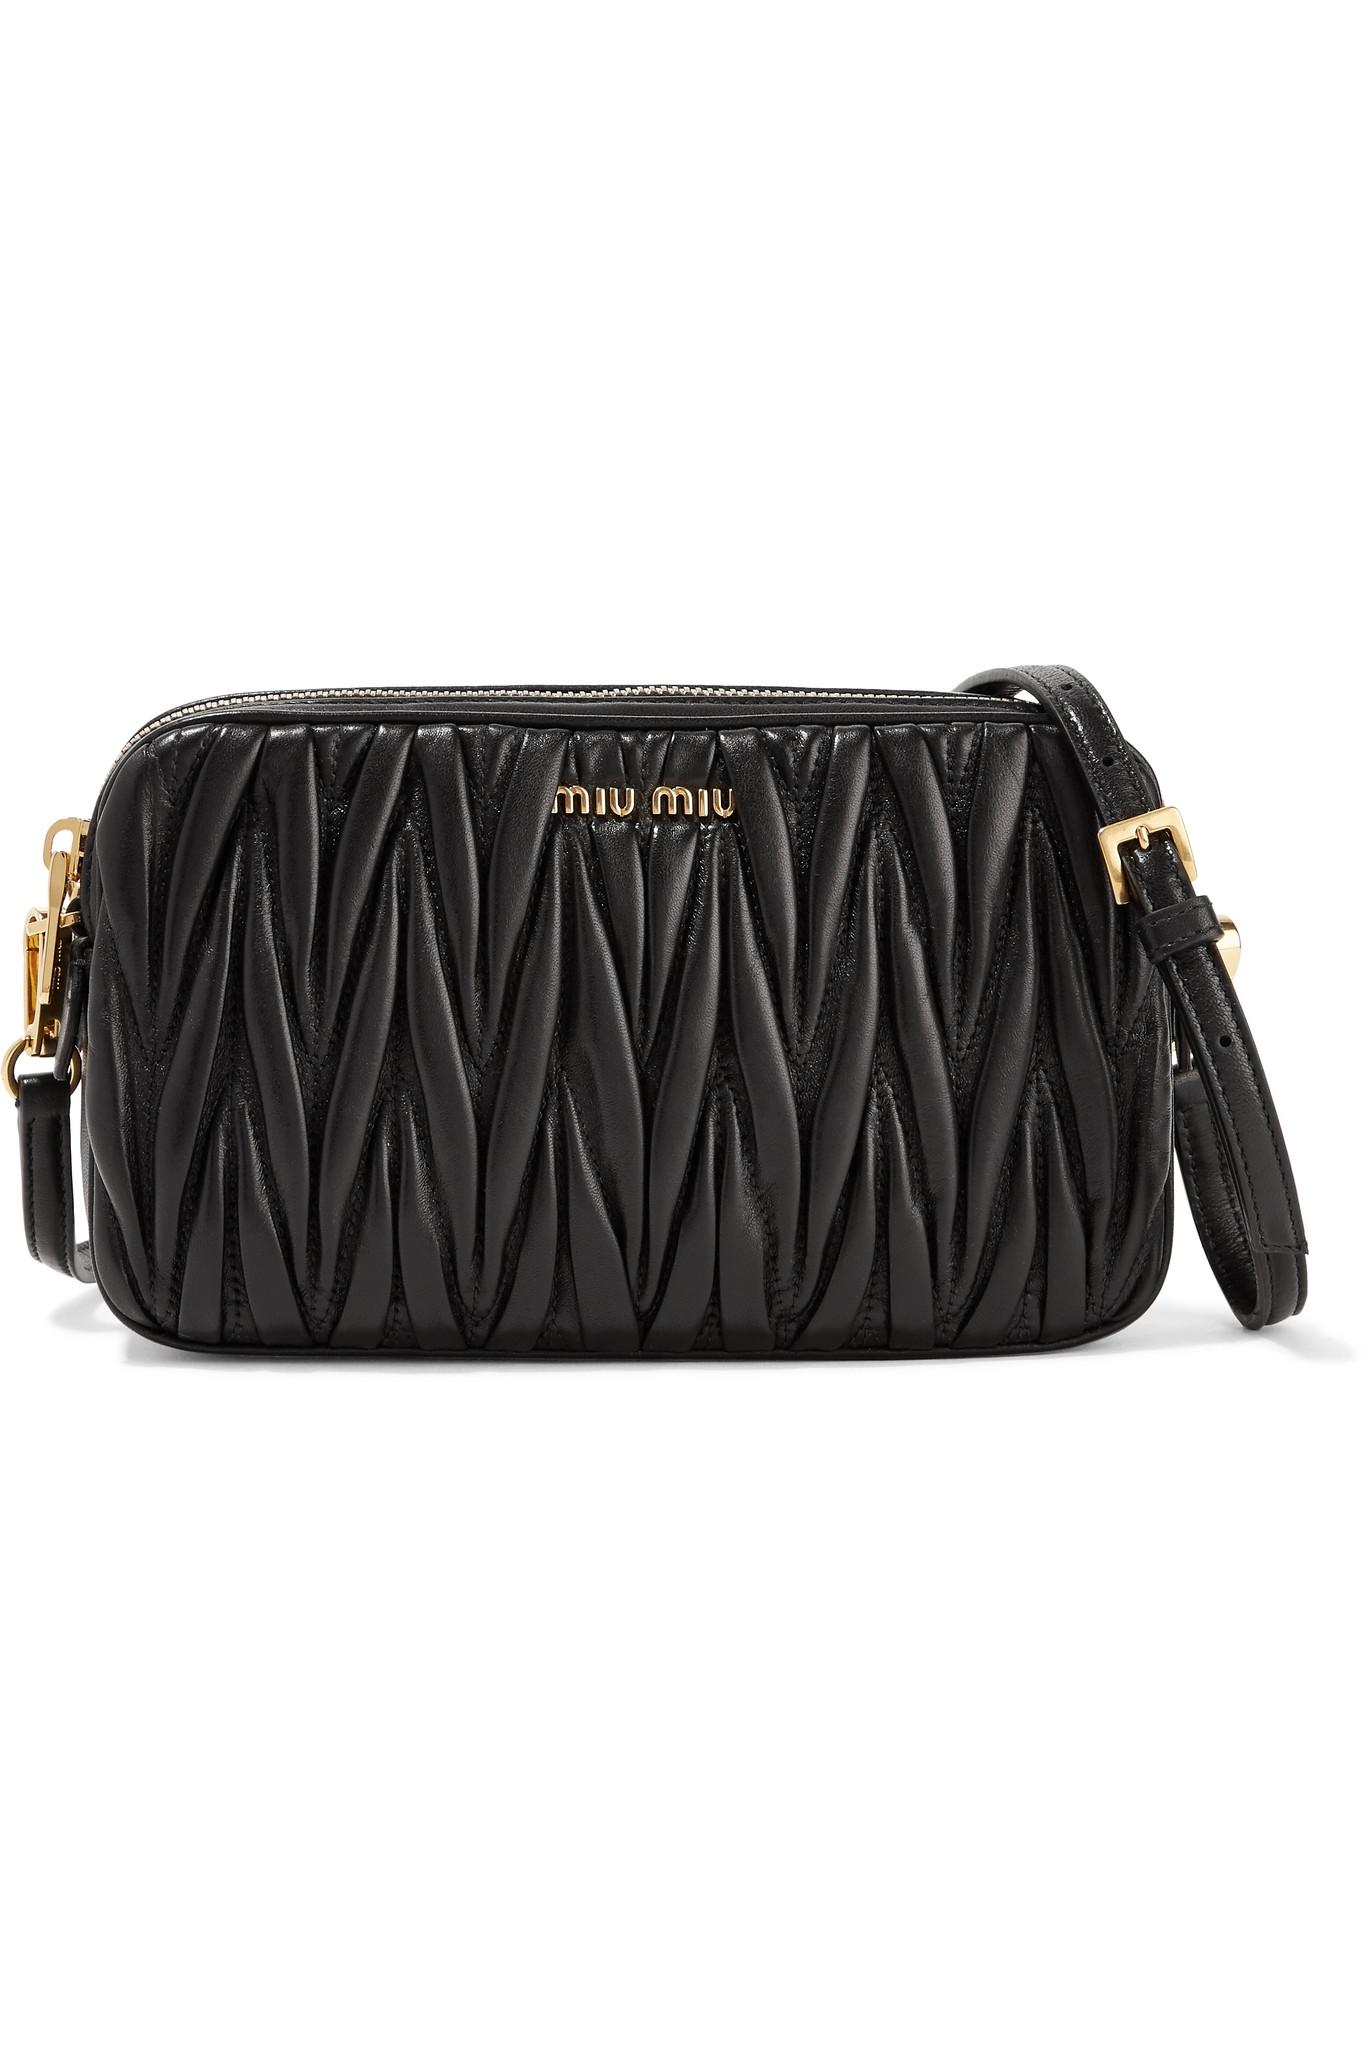 Miu Miu Matelassé Leather Camera Bag in Black | Lyst